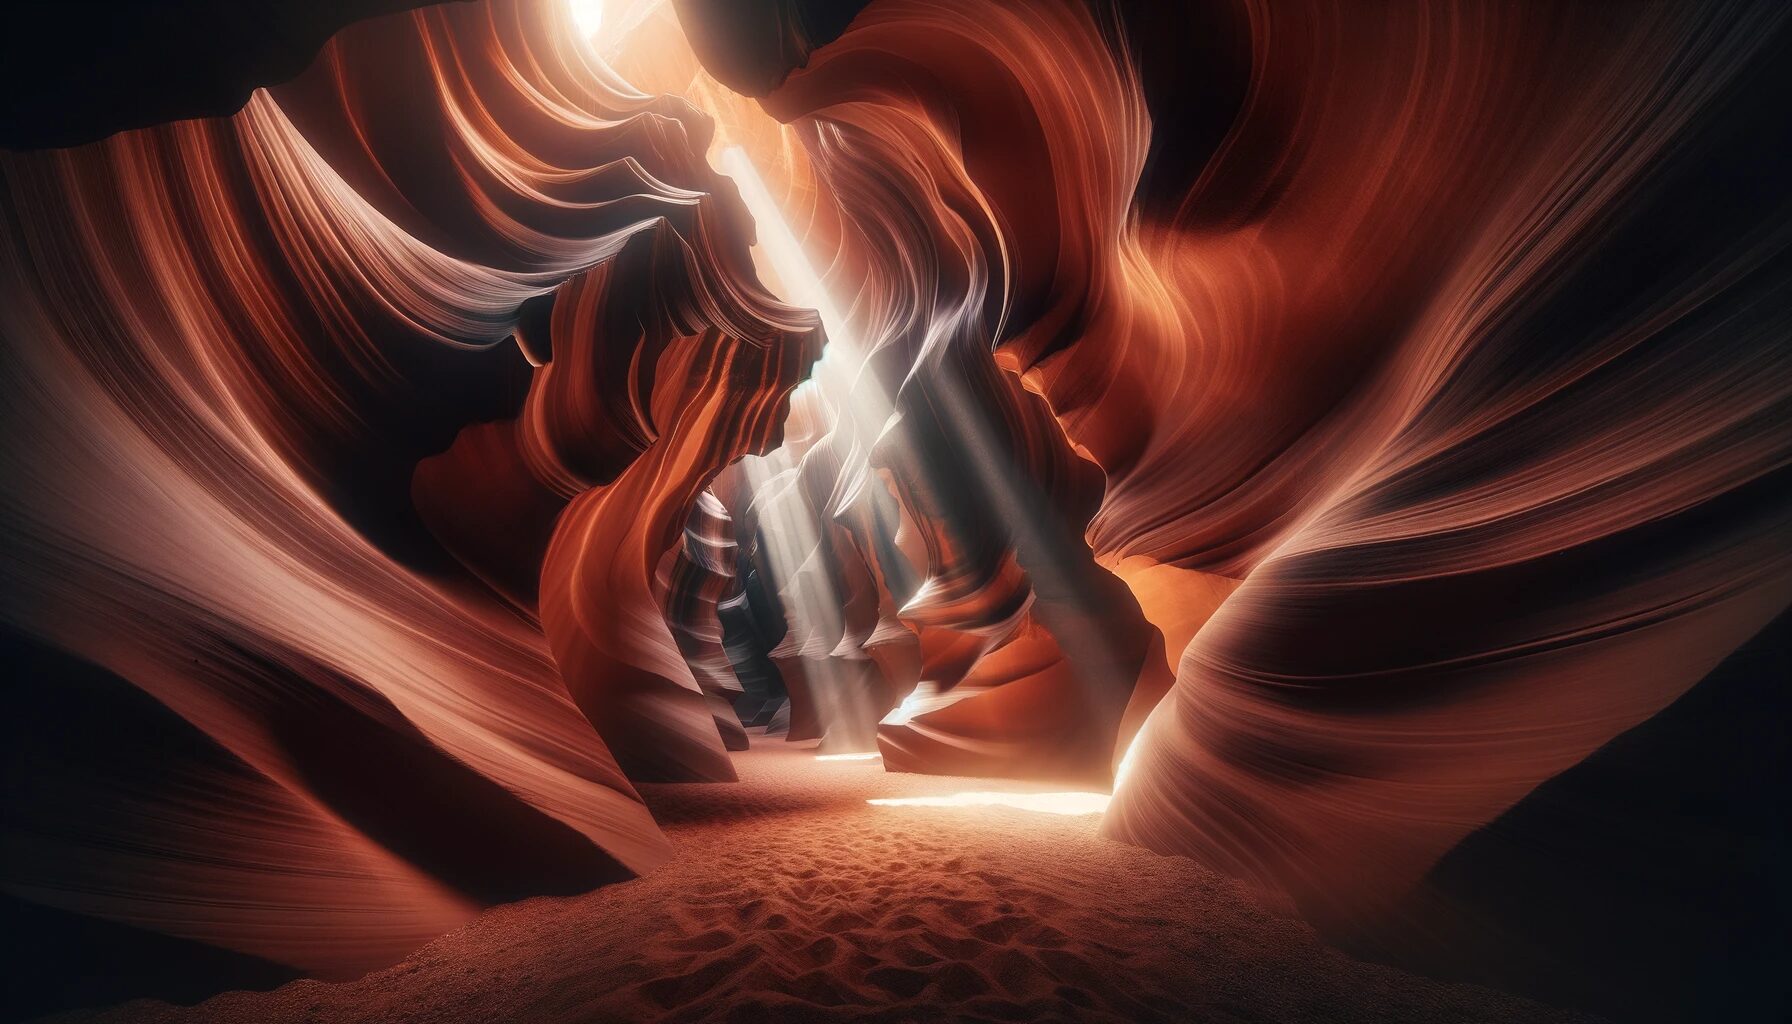 光と影が織りなすアンテロープキャニオンの神秘 - 無料写真素材